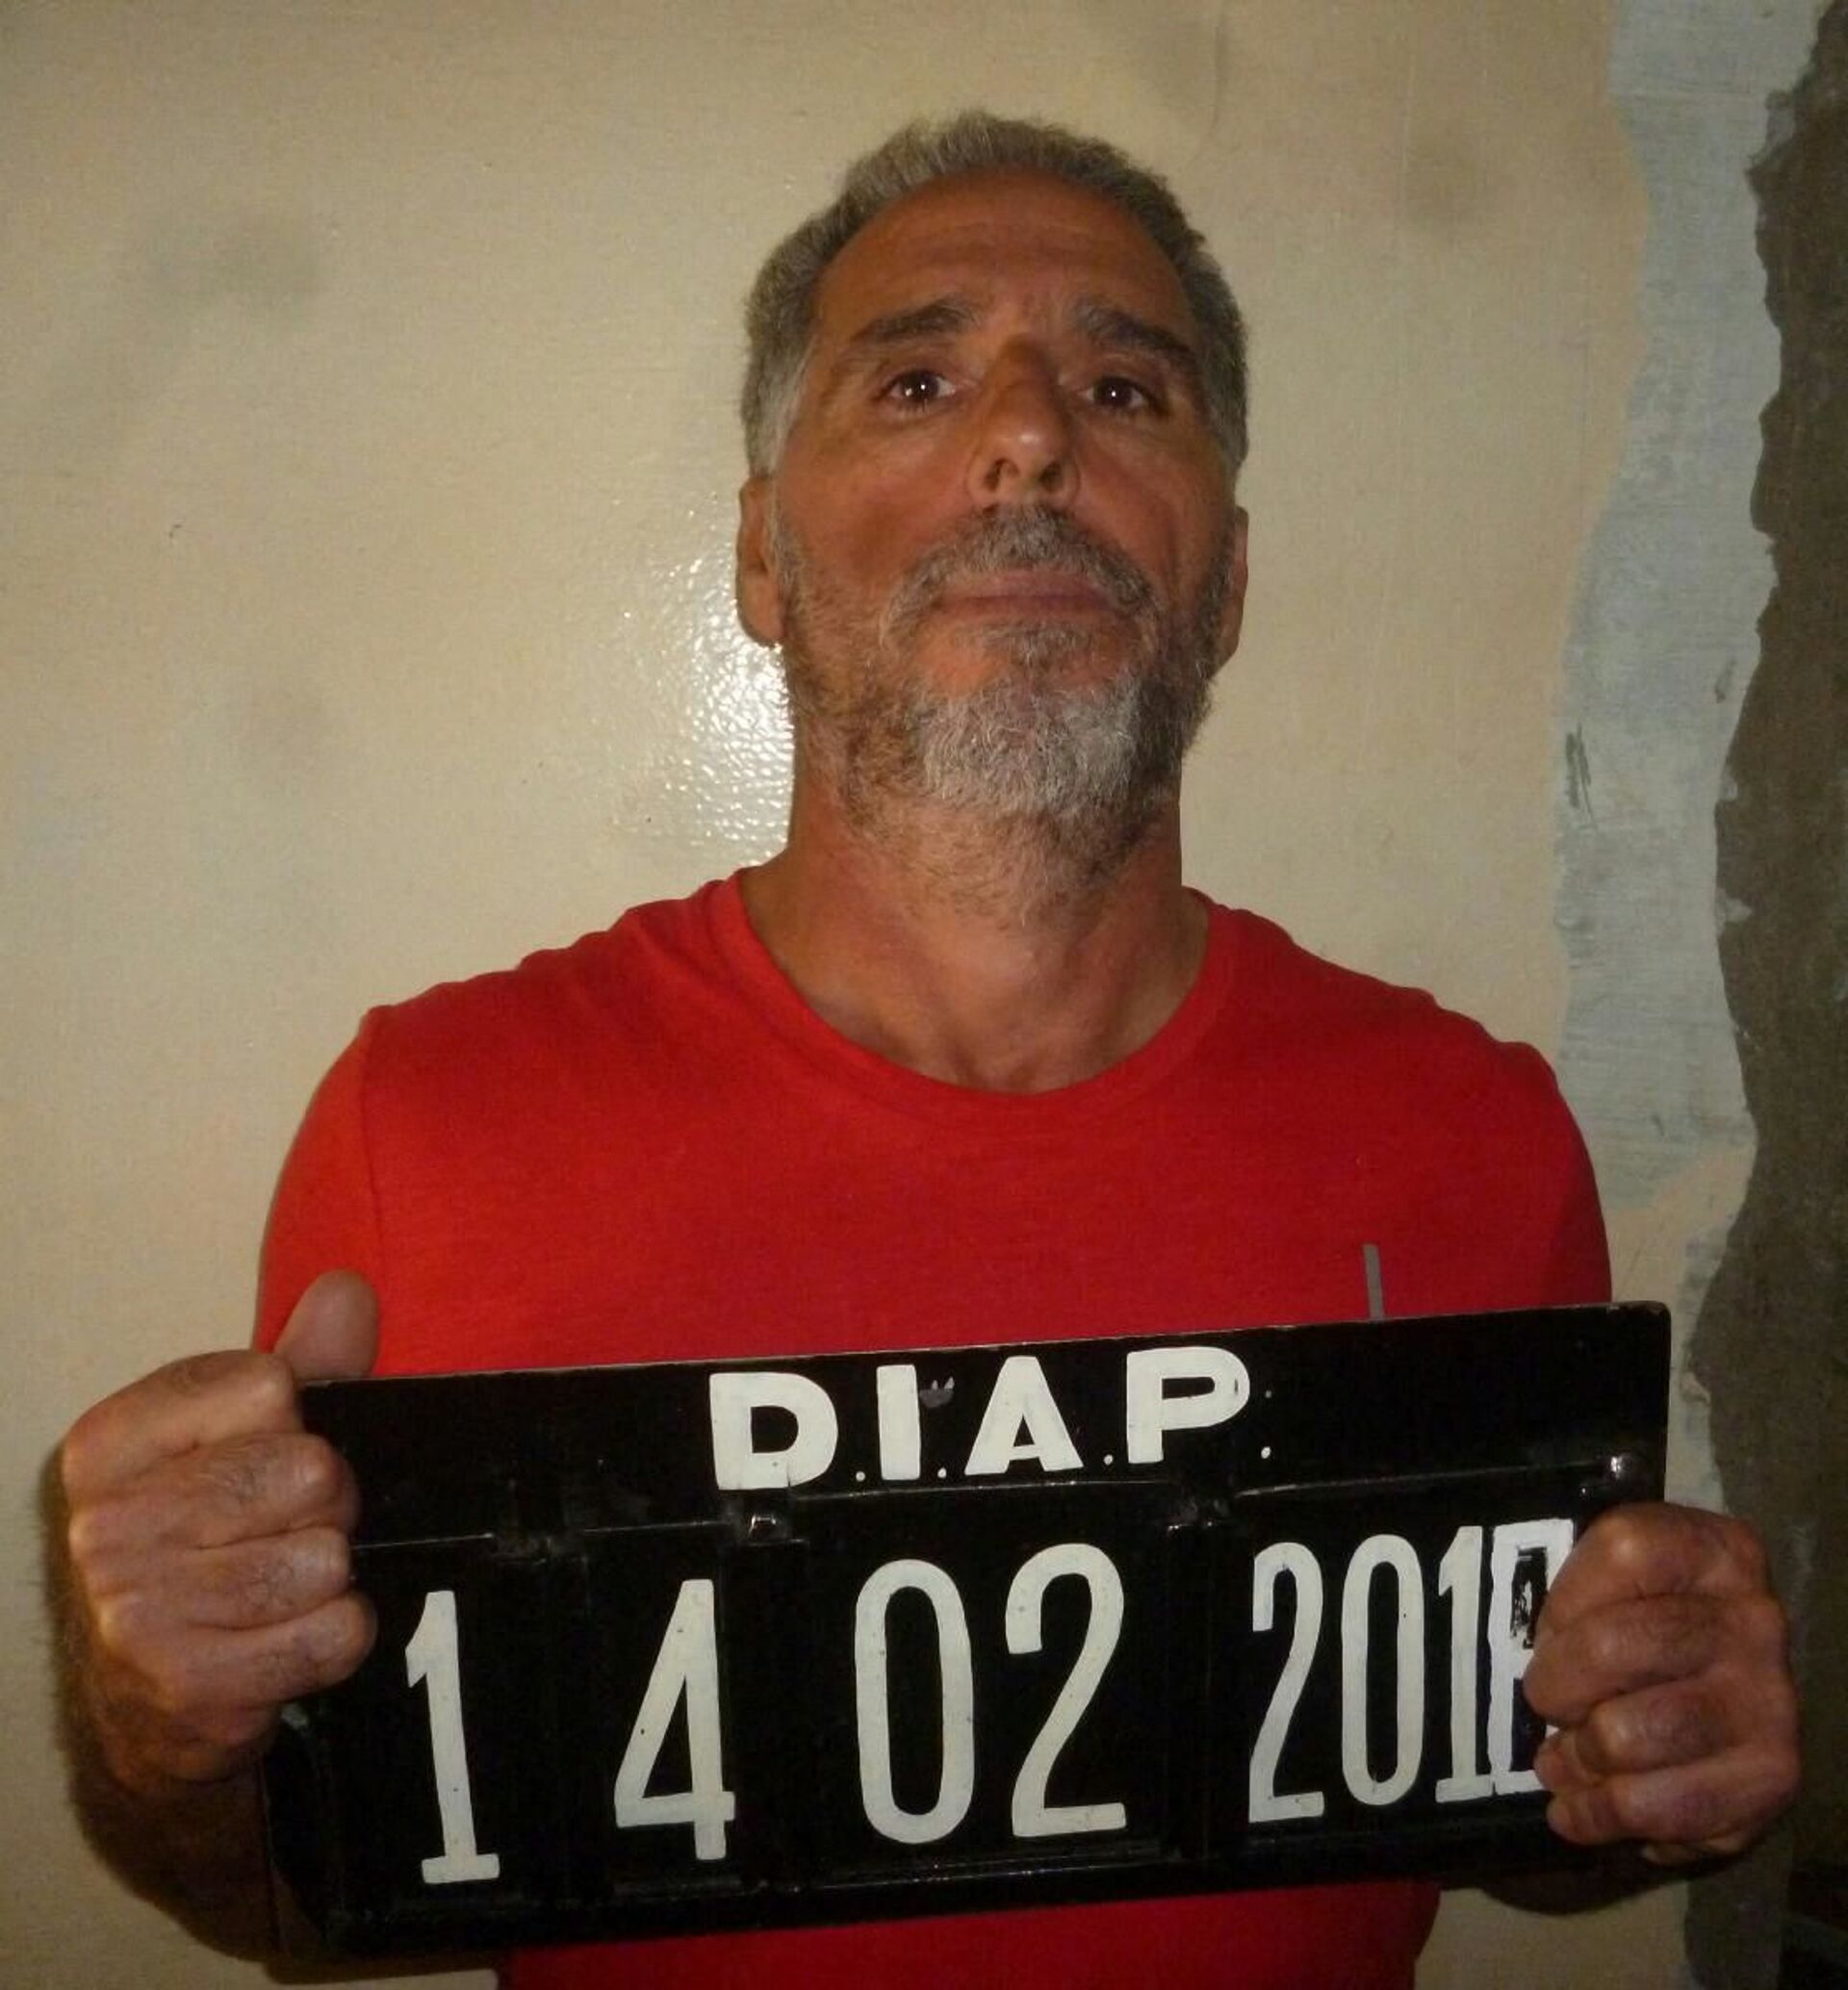 'Rei da cocaína' italiano é preso no Brasil 2 anos após escapar da prisão no Uruguai (FOTO) - Sputnik Brasil, 1920, 25.05.2021